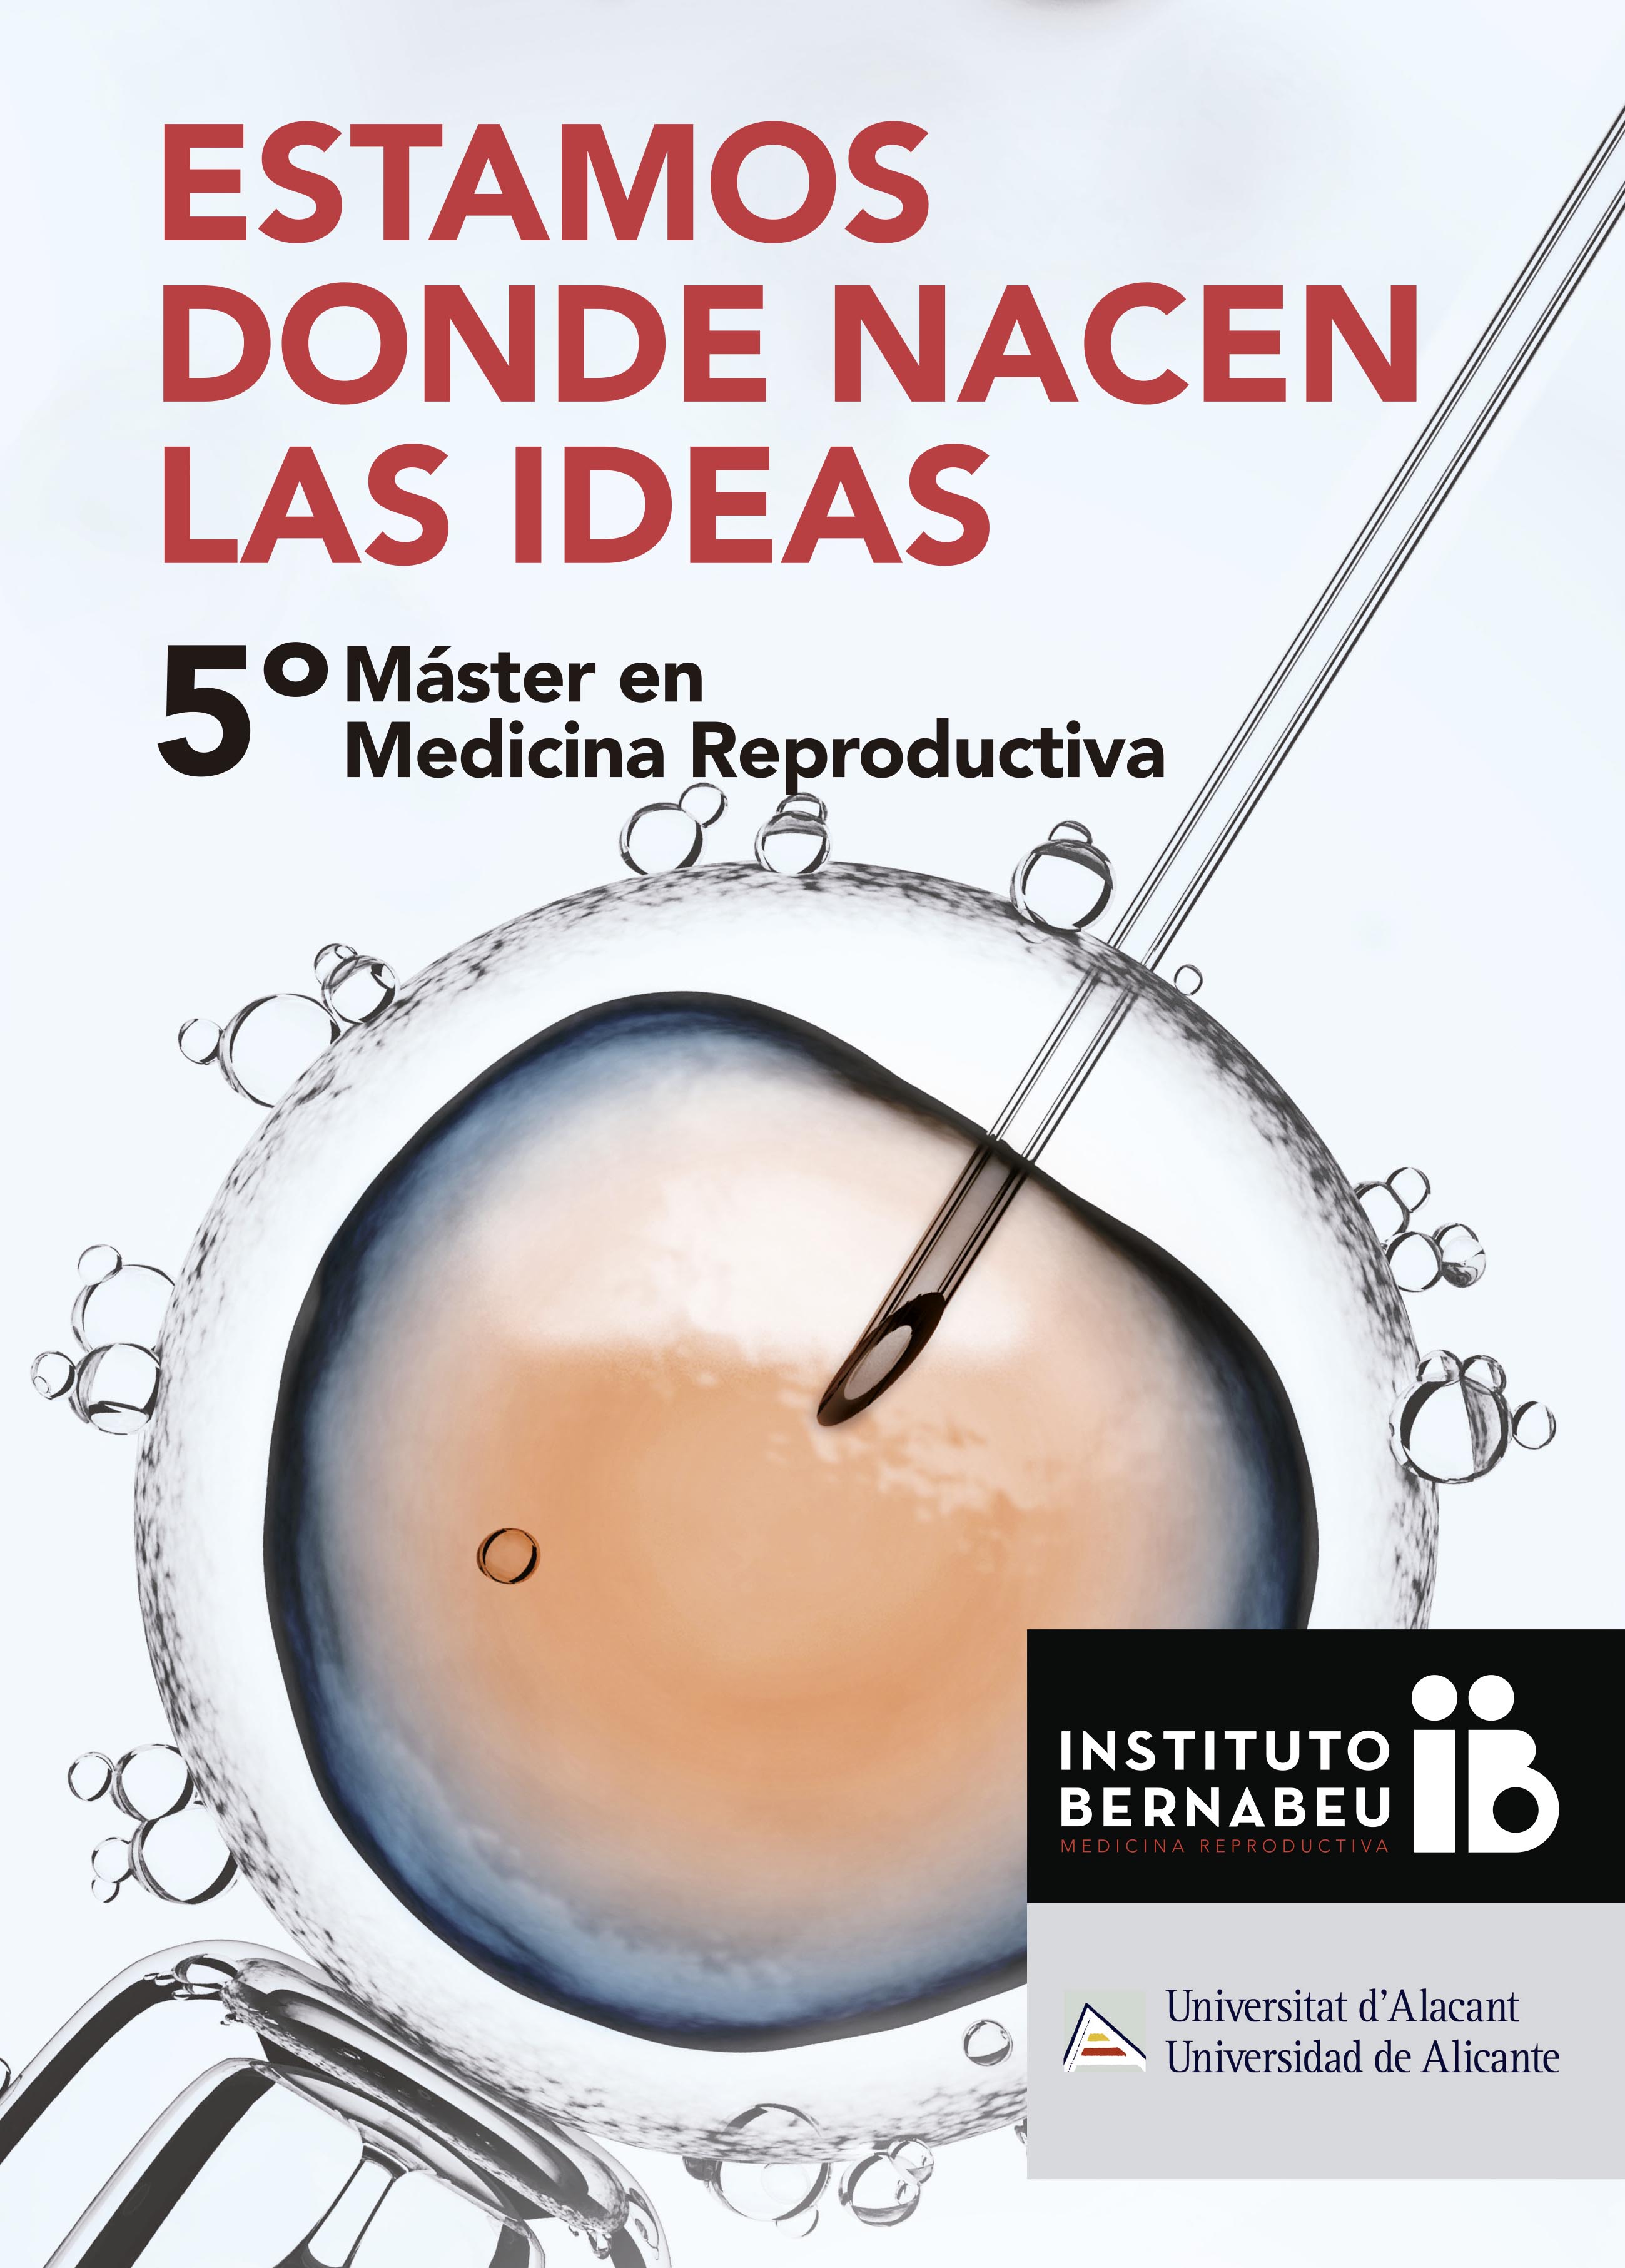 V Master Universitario di Medicina Reproductiva Instituto Bernabeu – Universitá di Alicante